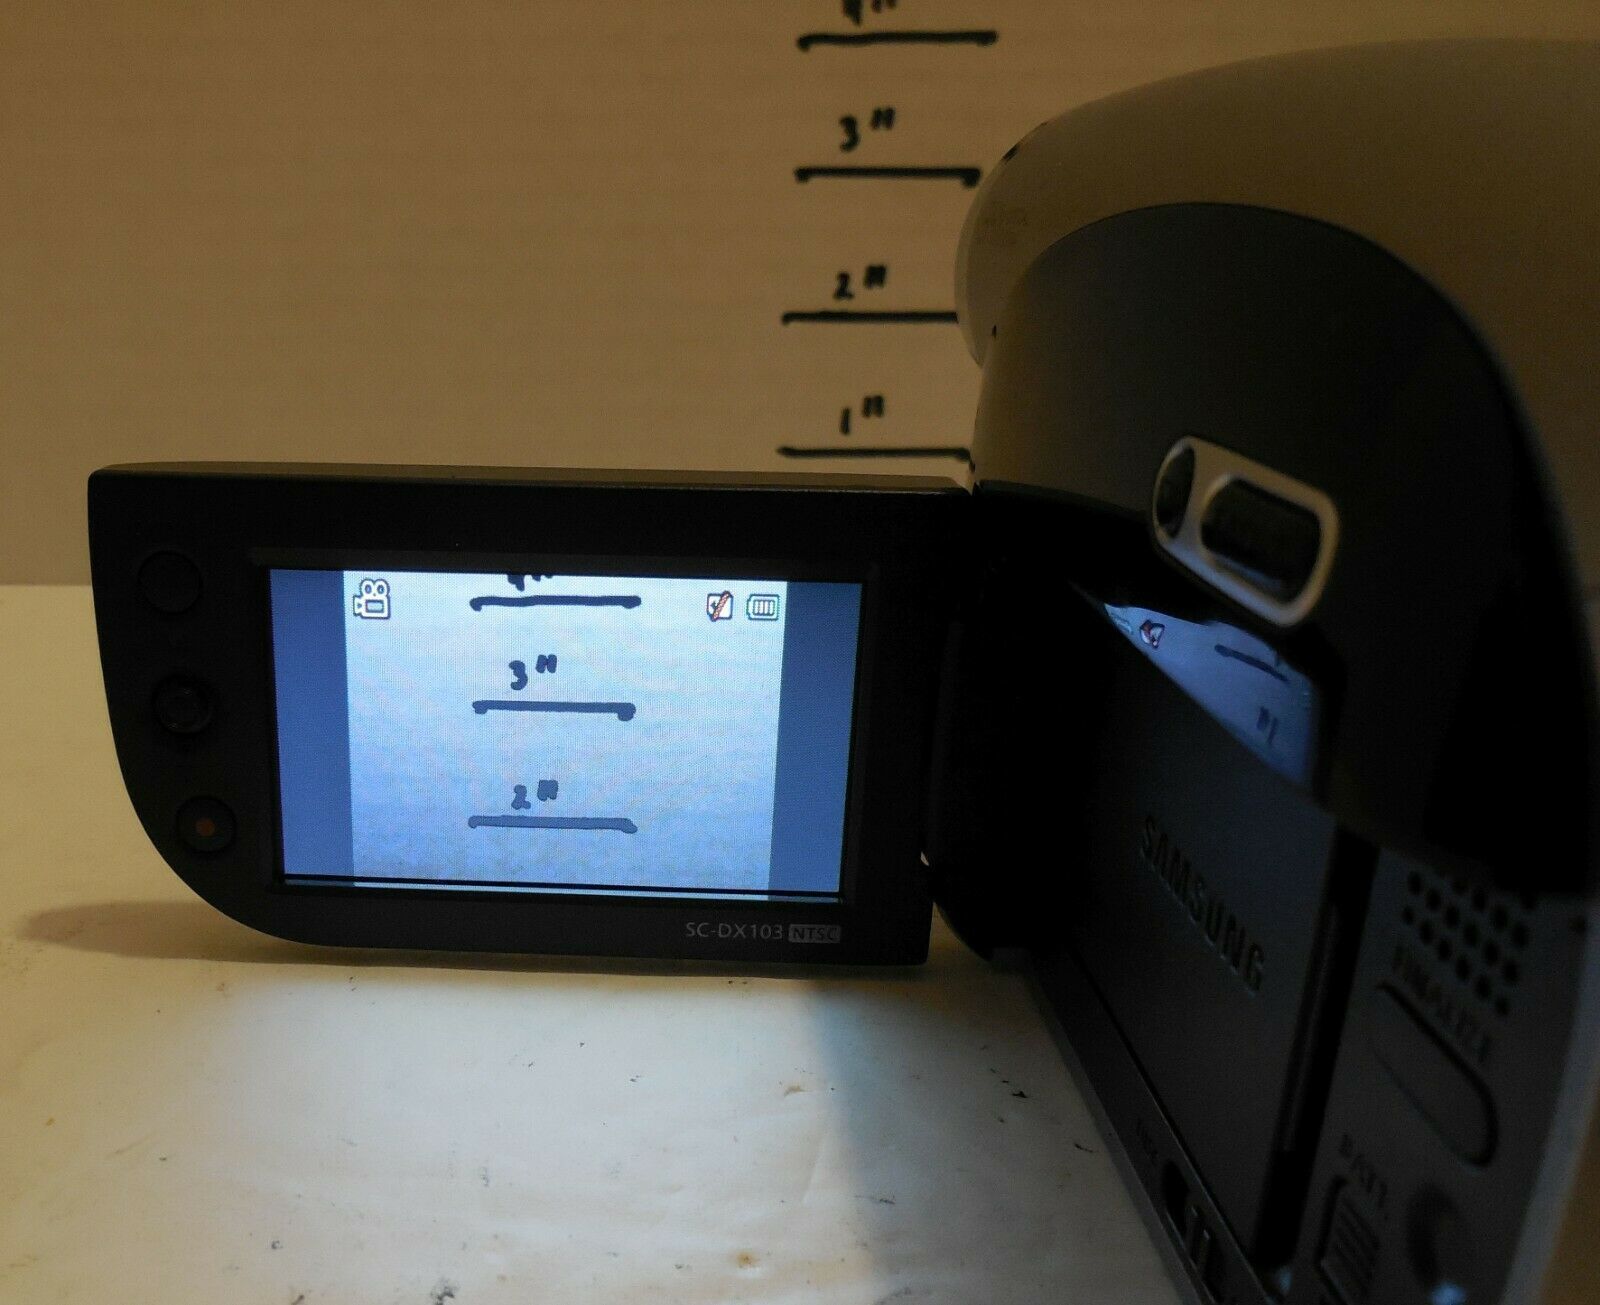 samsung sc-dx103 dvd digital camcorder